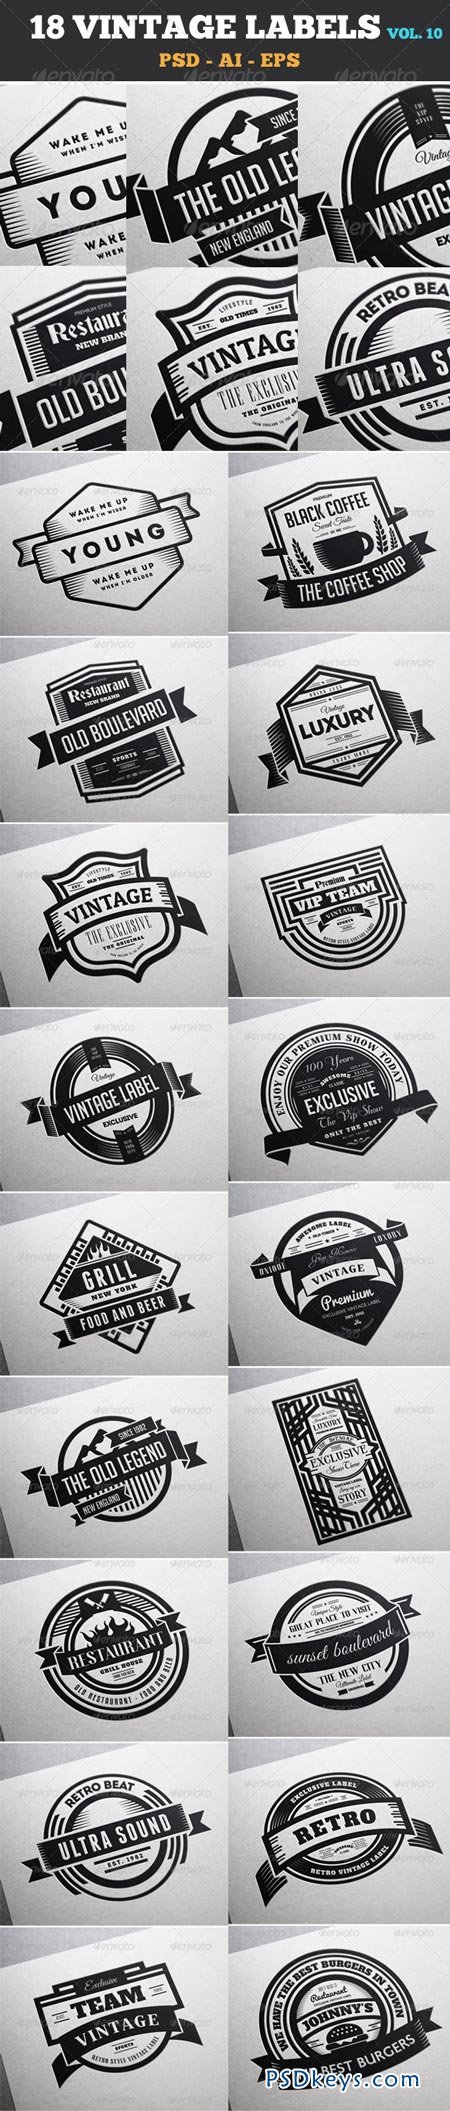 18 Vintage Labels & Badges Logos Insignias V10 7292169